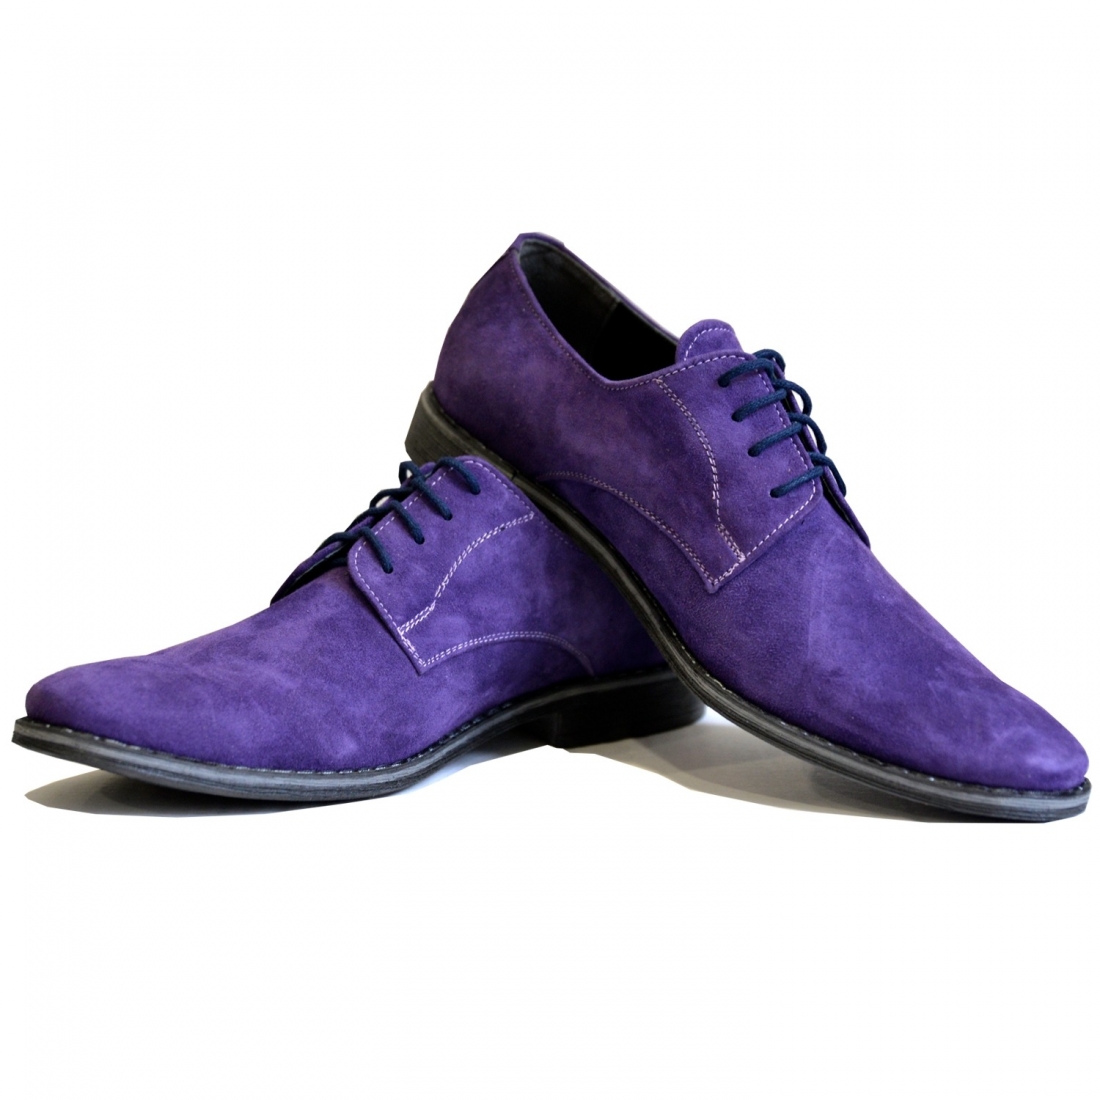 Modello Arrio - Scarpe Classiche - Handmade Colorful Italian Leather Shoes